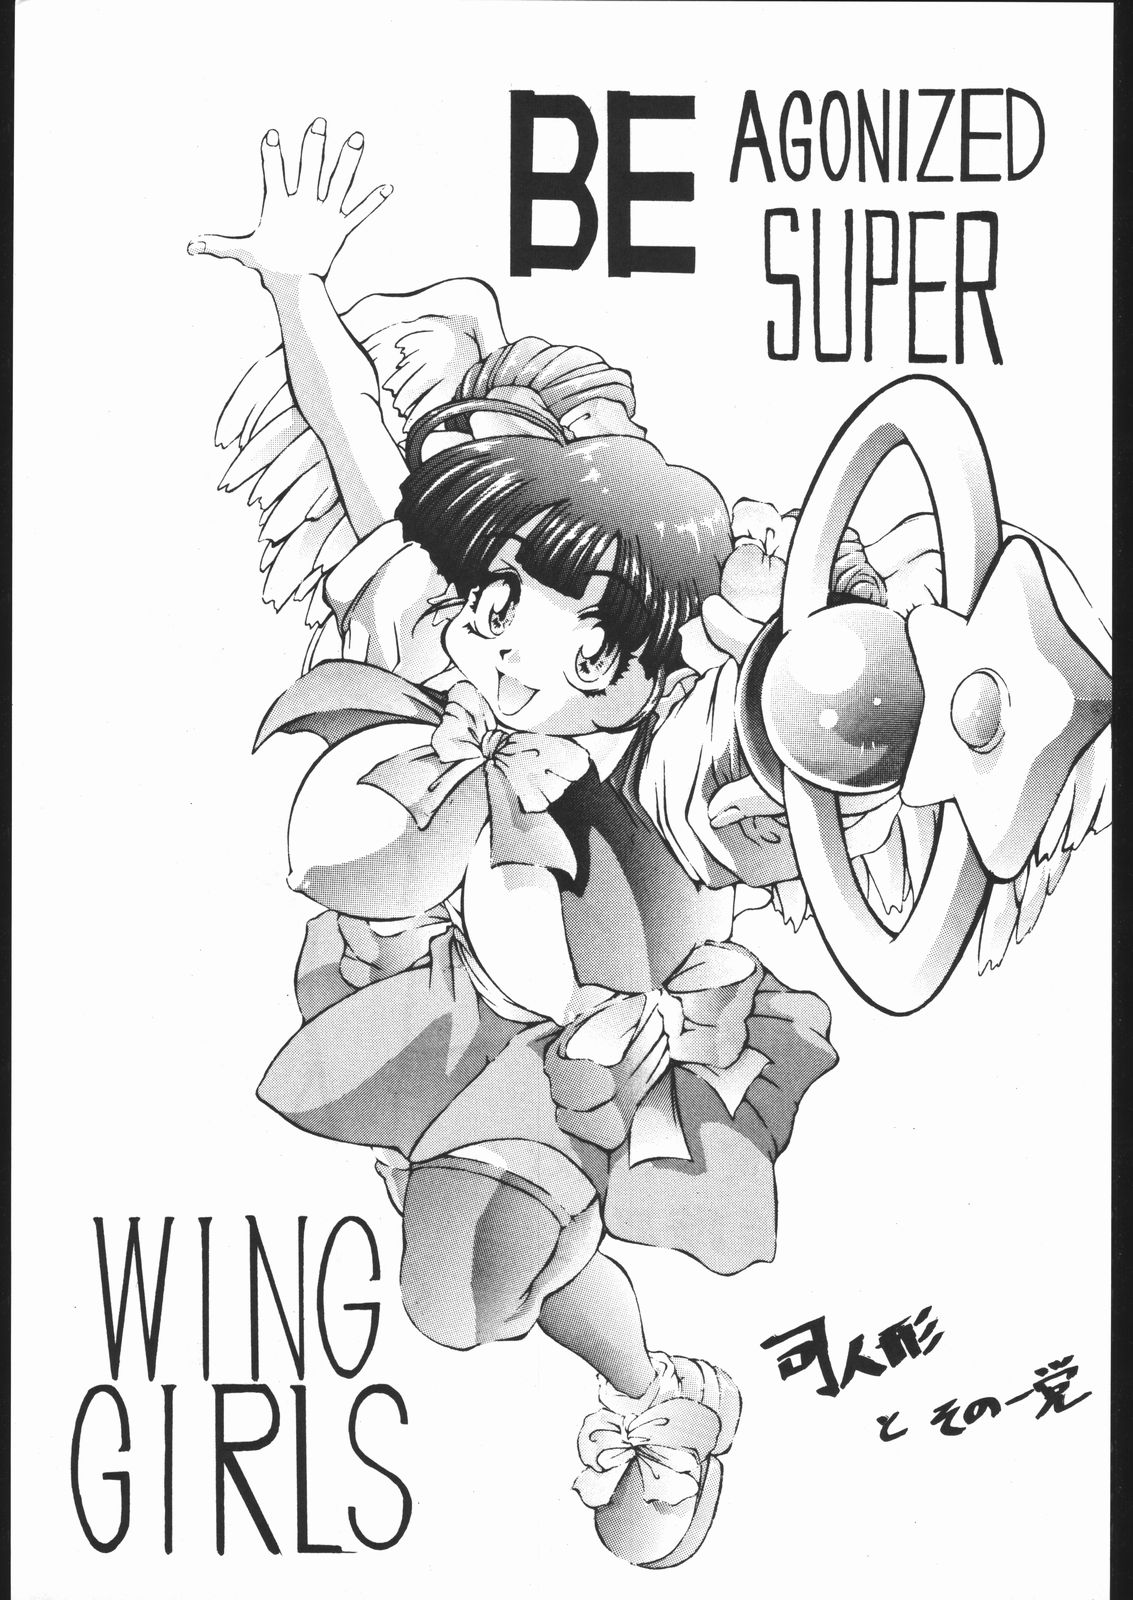 [野獣家族] Be Agonized Super Wing Girls